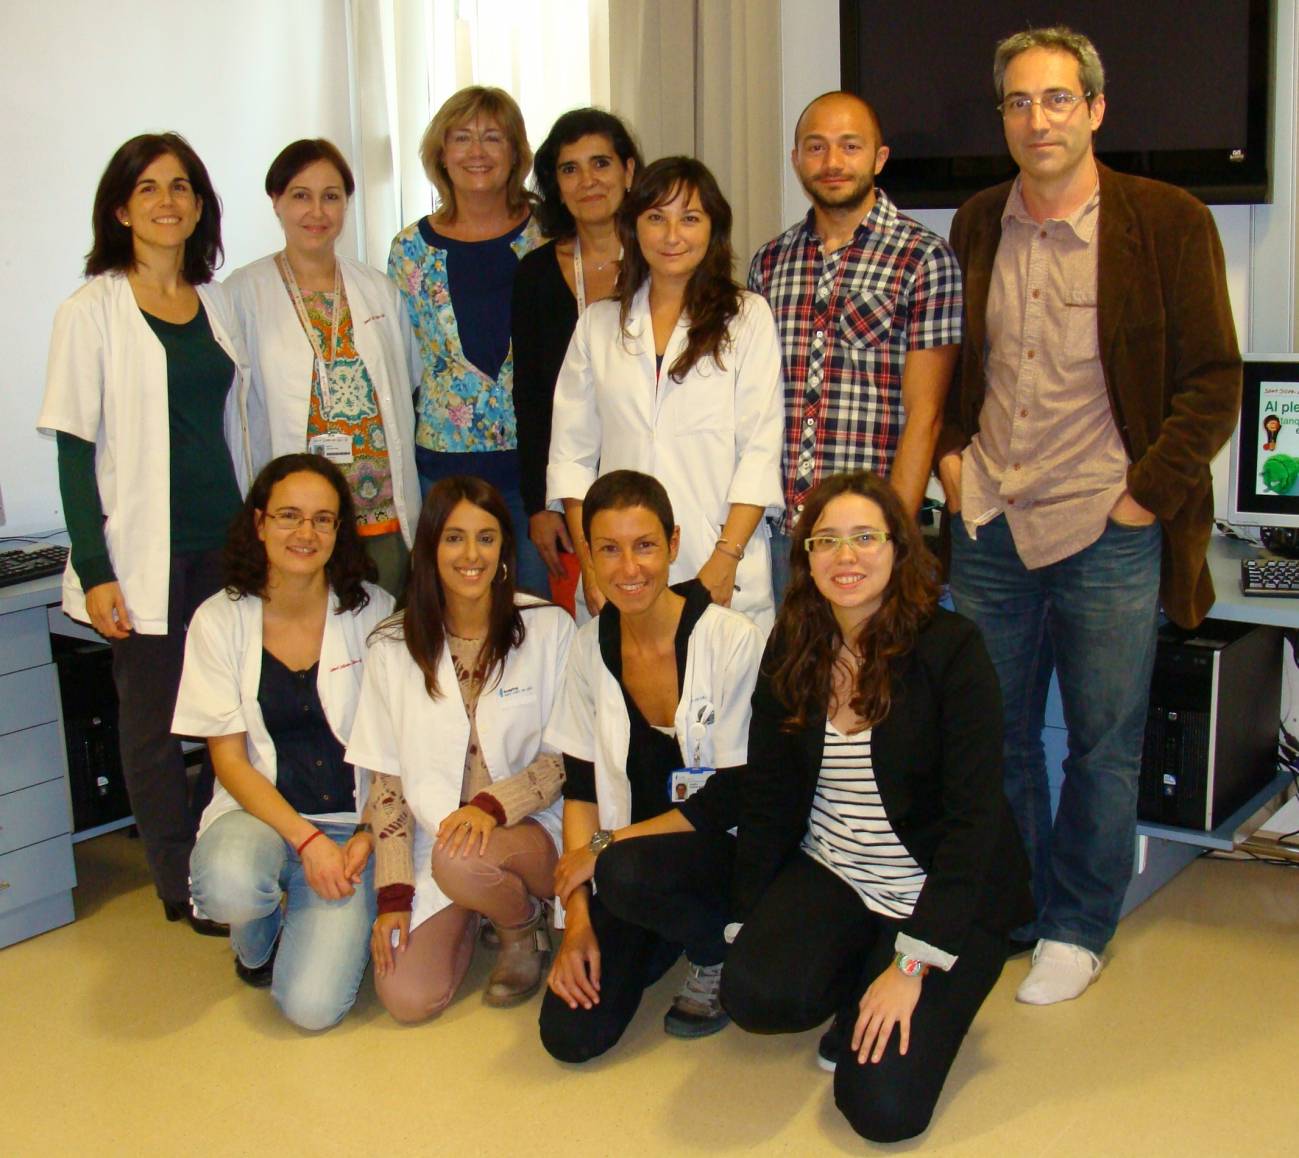 Una imagen del equip científico en el que participan los investigadores Bru Cormand, Claudio Toma, Amaia Hervás, Conchita Arenas y Alba Tristán, entre otros expertos.